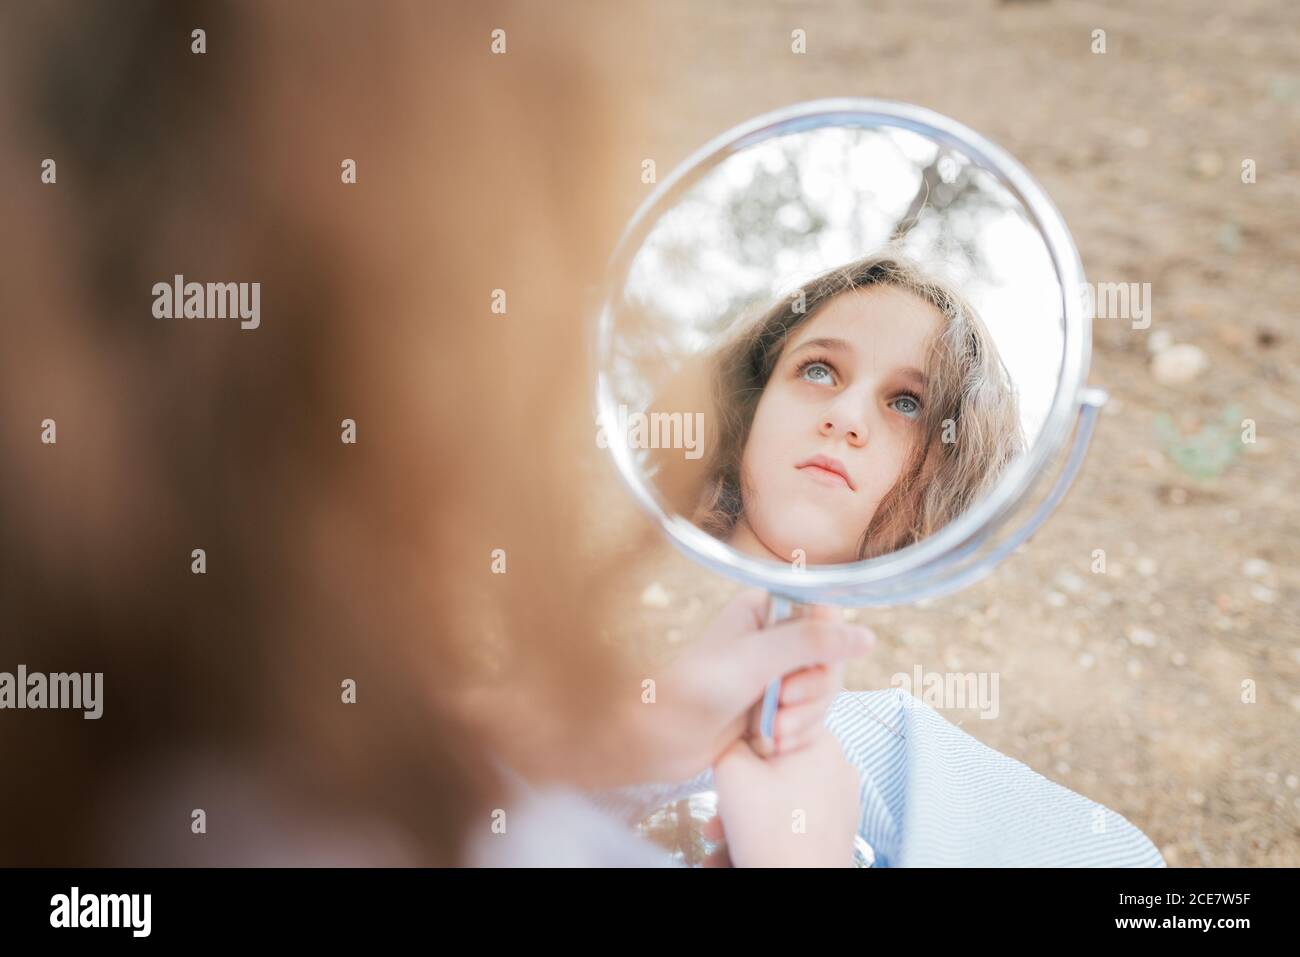 Wehmütig Kind mit blauen Augen und braunen Haaren wegschauen Beim  Reflektieren in runden Spiegel in der Wohnung bei Tageslicht  Stockfotografie - Alamy